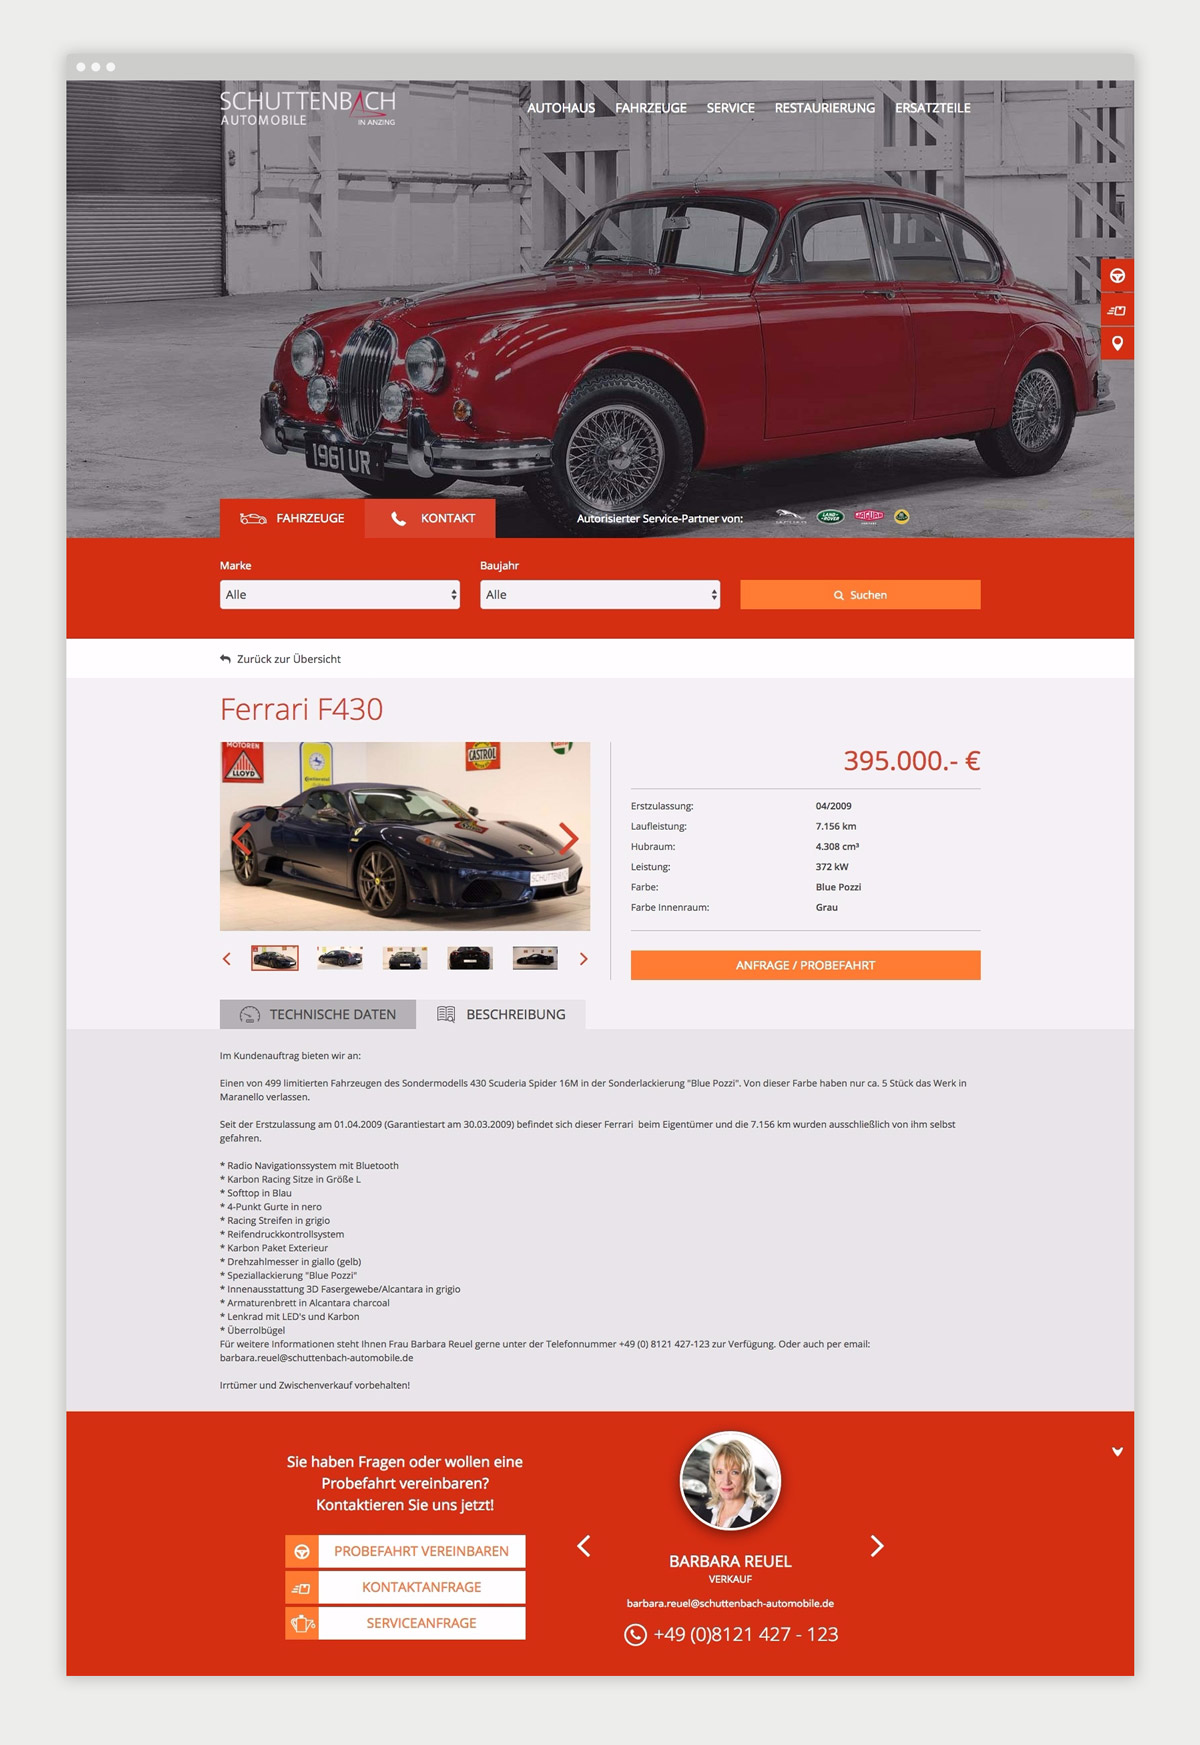 Contentseite von Schuttenbach Automobile GmbH